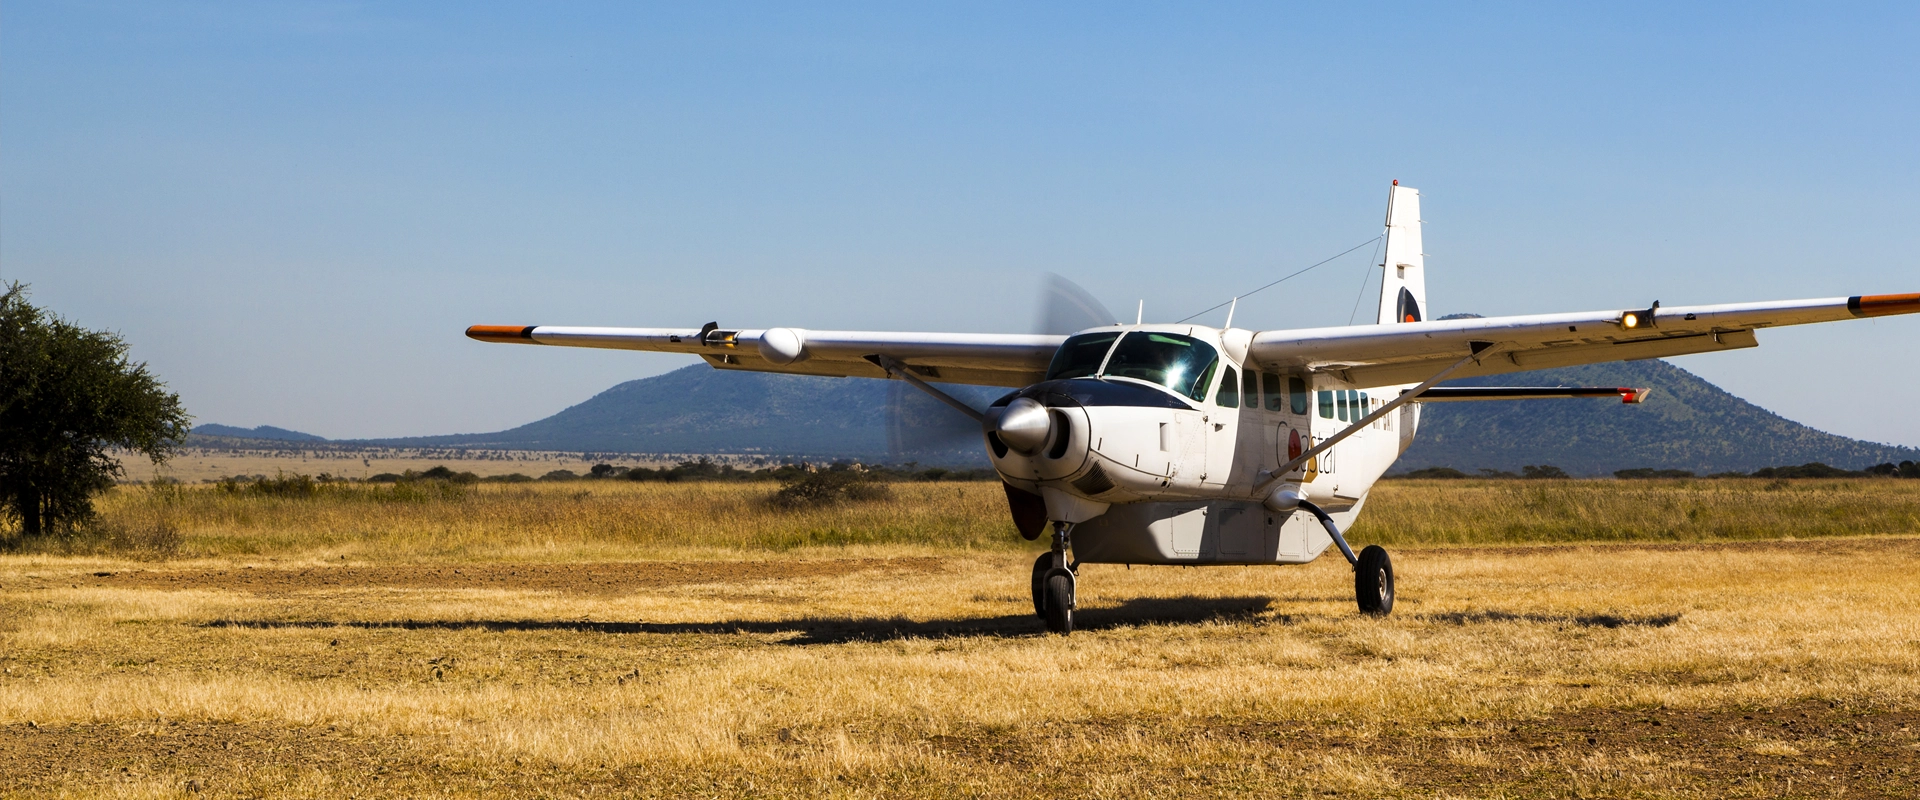 Voyage Flying Kenya